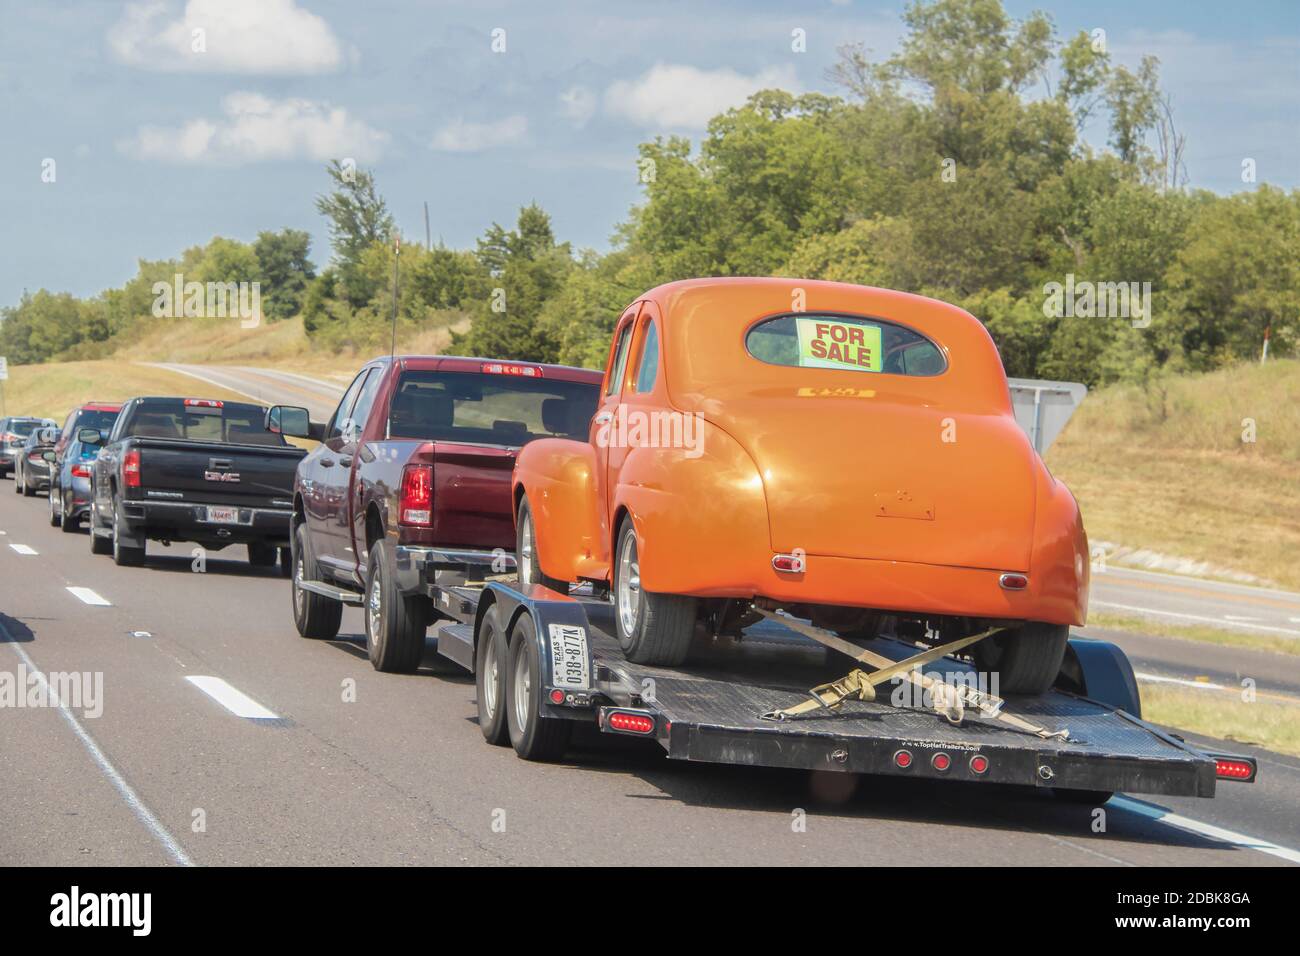 Aug 13 2019 Ft Worth USA Linie von Autos und LKW auf Autobahn - hinten zieht man Anhänger mit orange Oldtimer geschnallt auf mit für Verkauf Zeichen in zurück wi Stockfoto